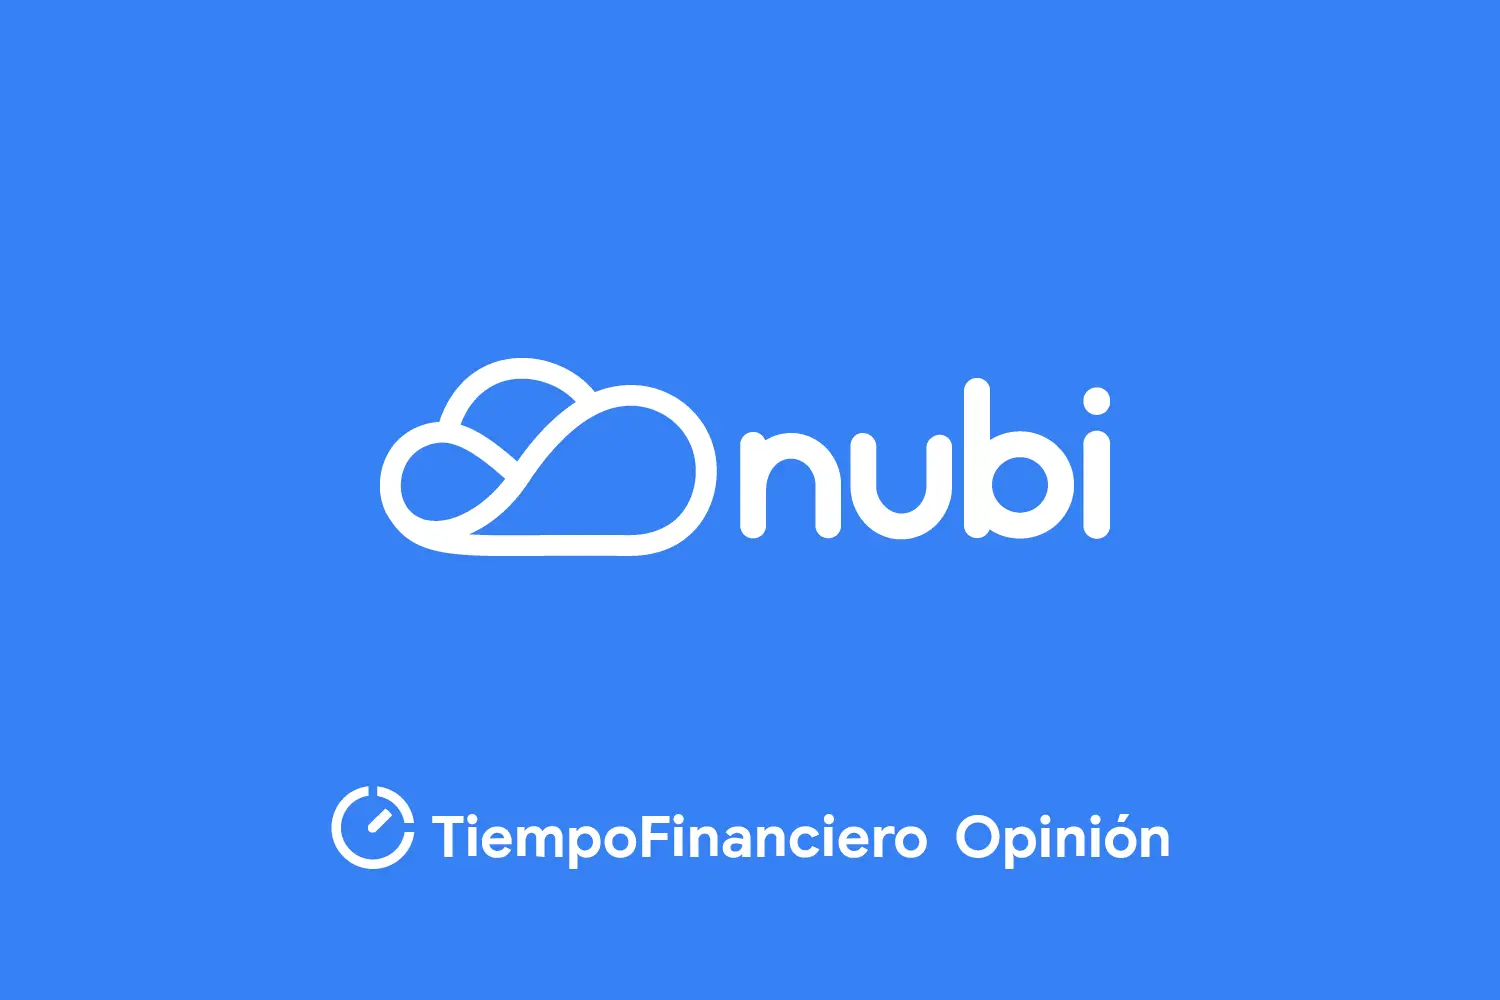 Imagen destacada del artículo Nubi opiniones: la billetera virtual que permite retirar dinero de Paypal